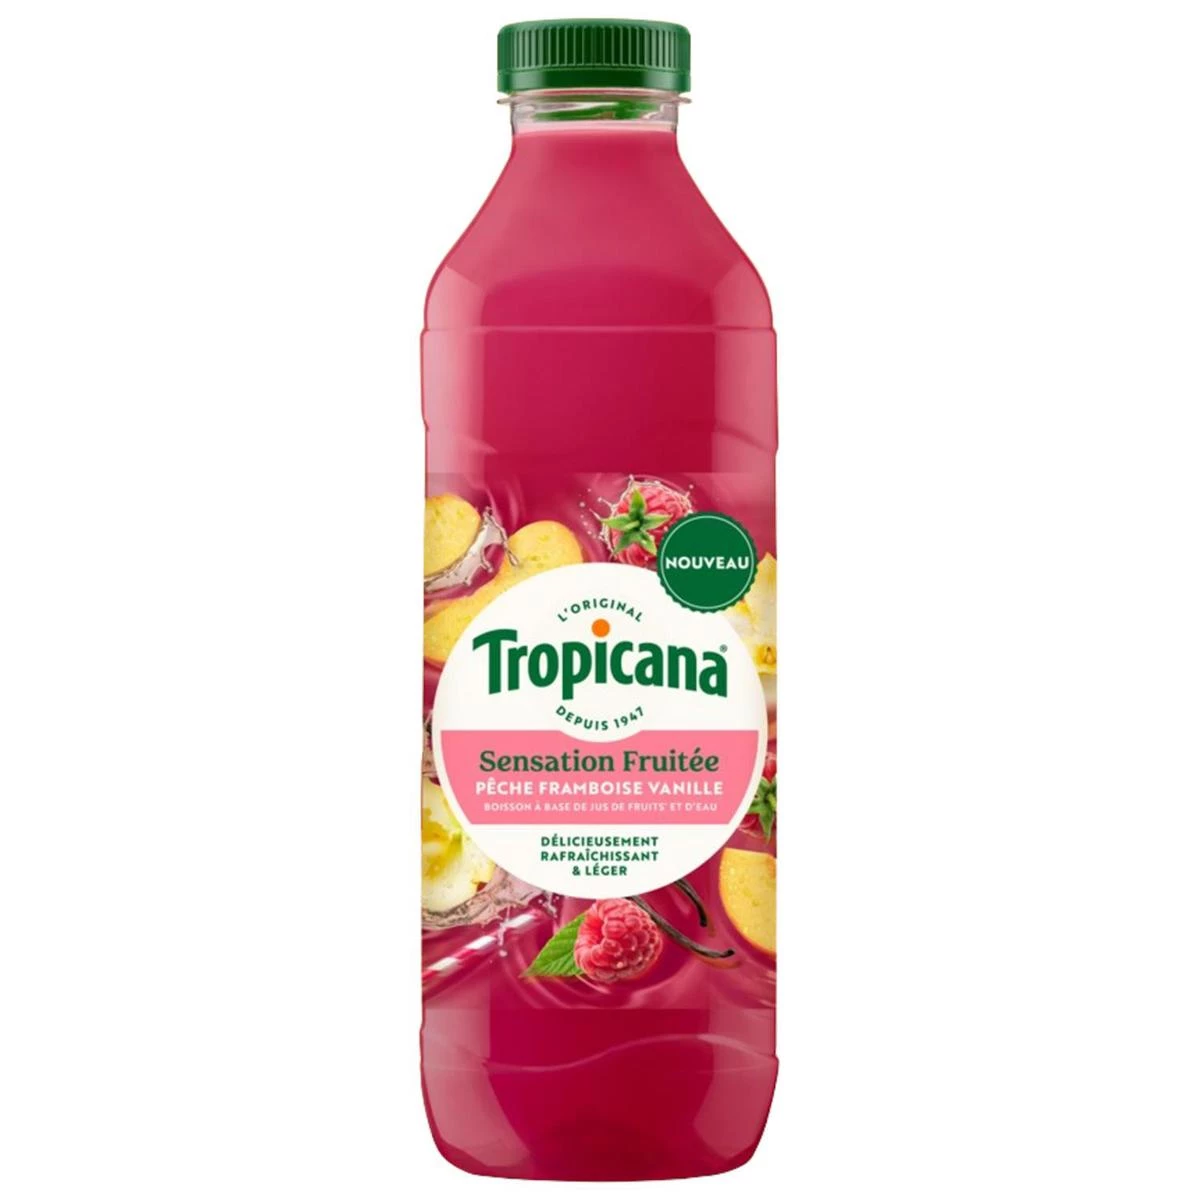 1l Tropicana Sensation Fruitee